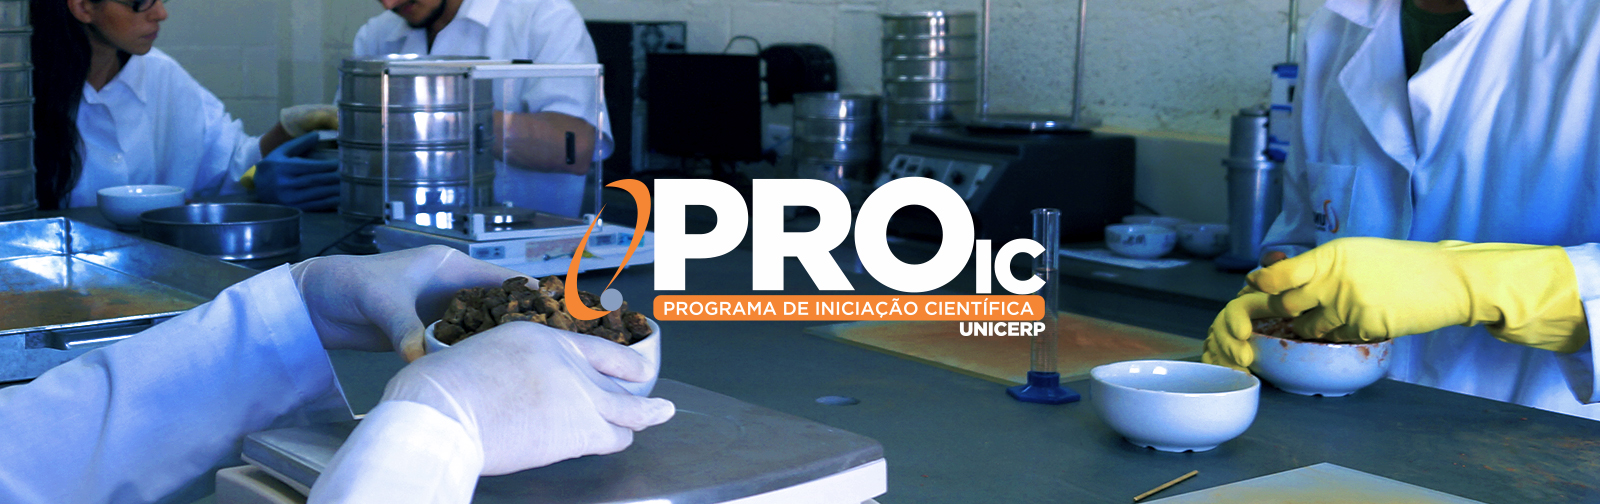 ProIC - Programa de Iniciação Científica - Programação